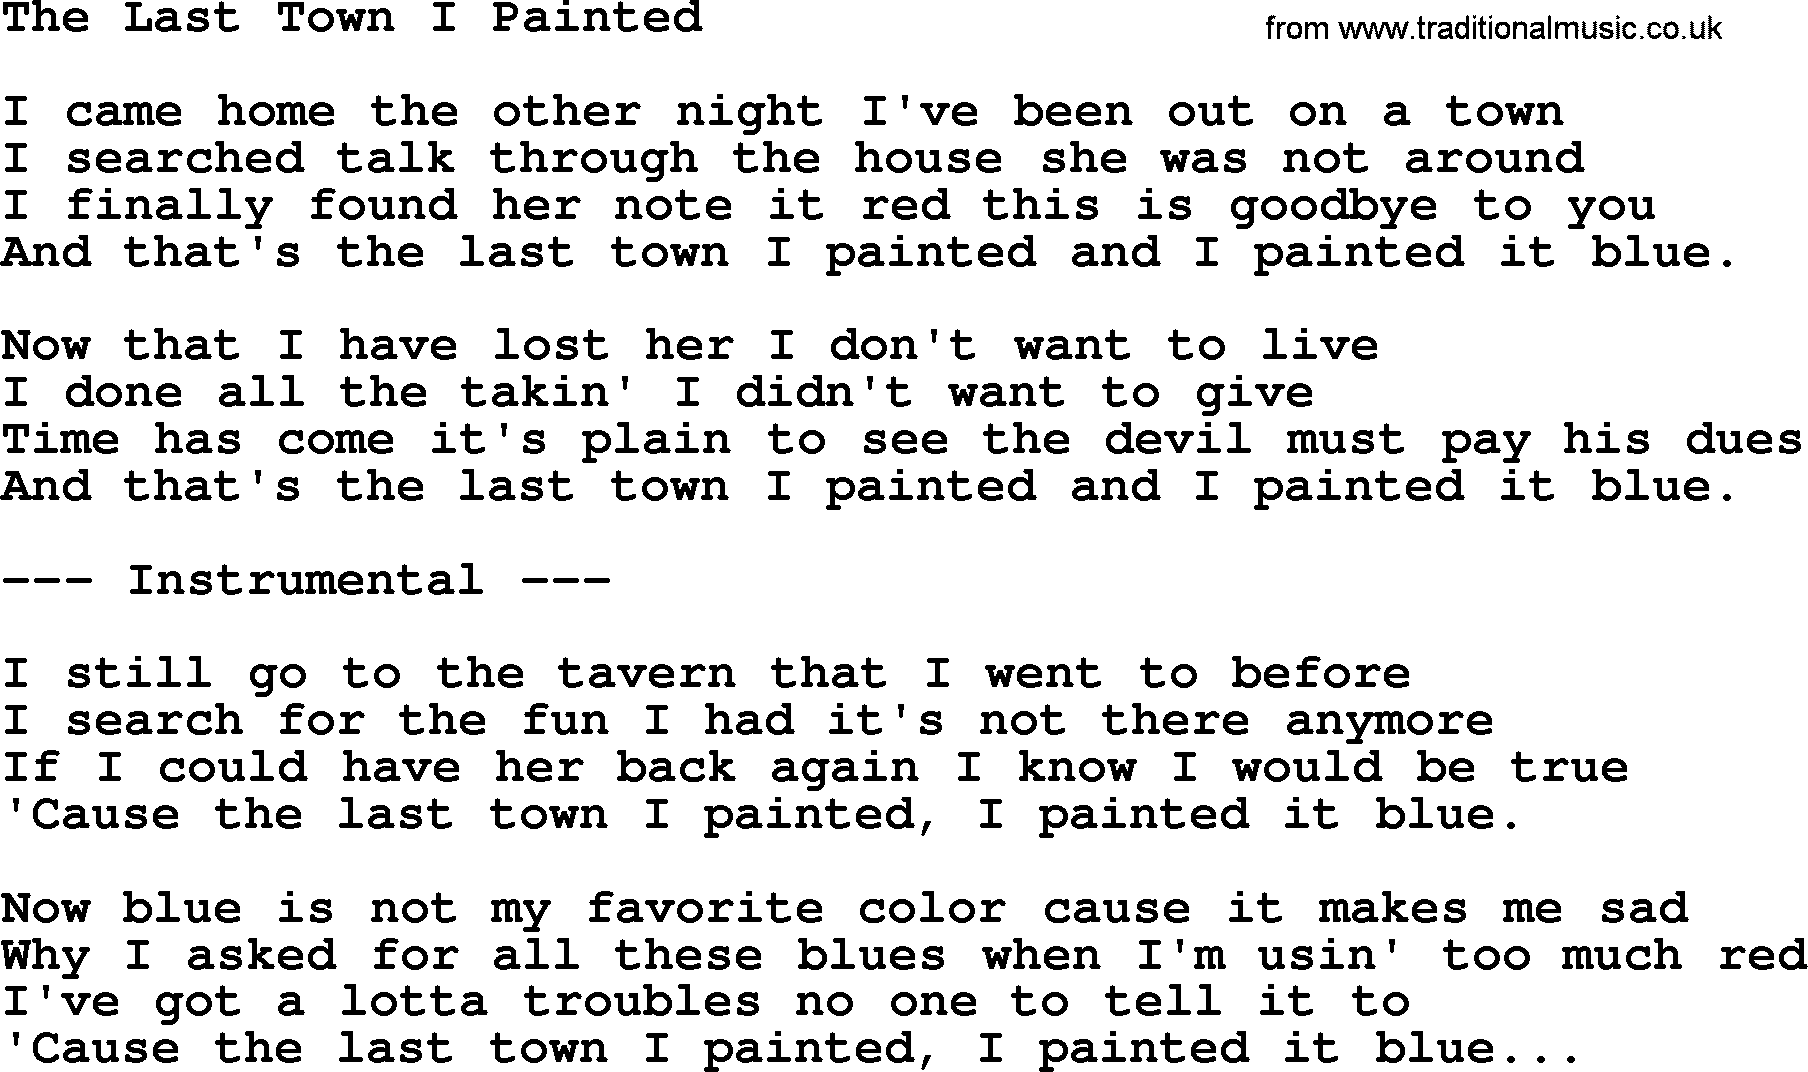 George Jones song: The Last Town I Painted, lyrics